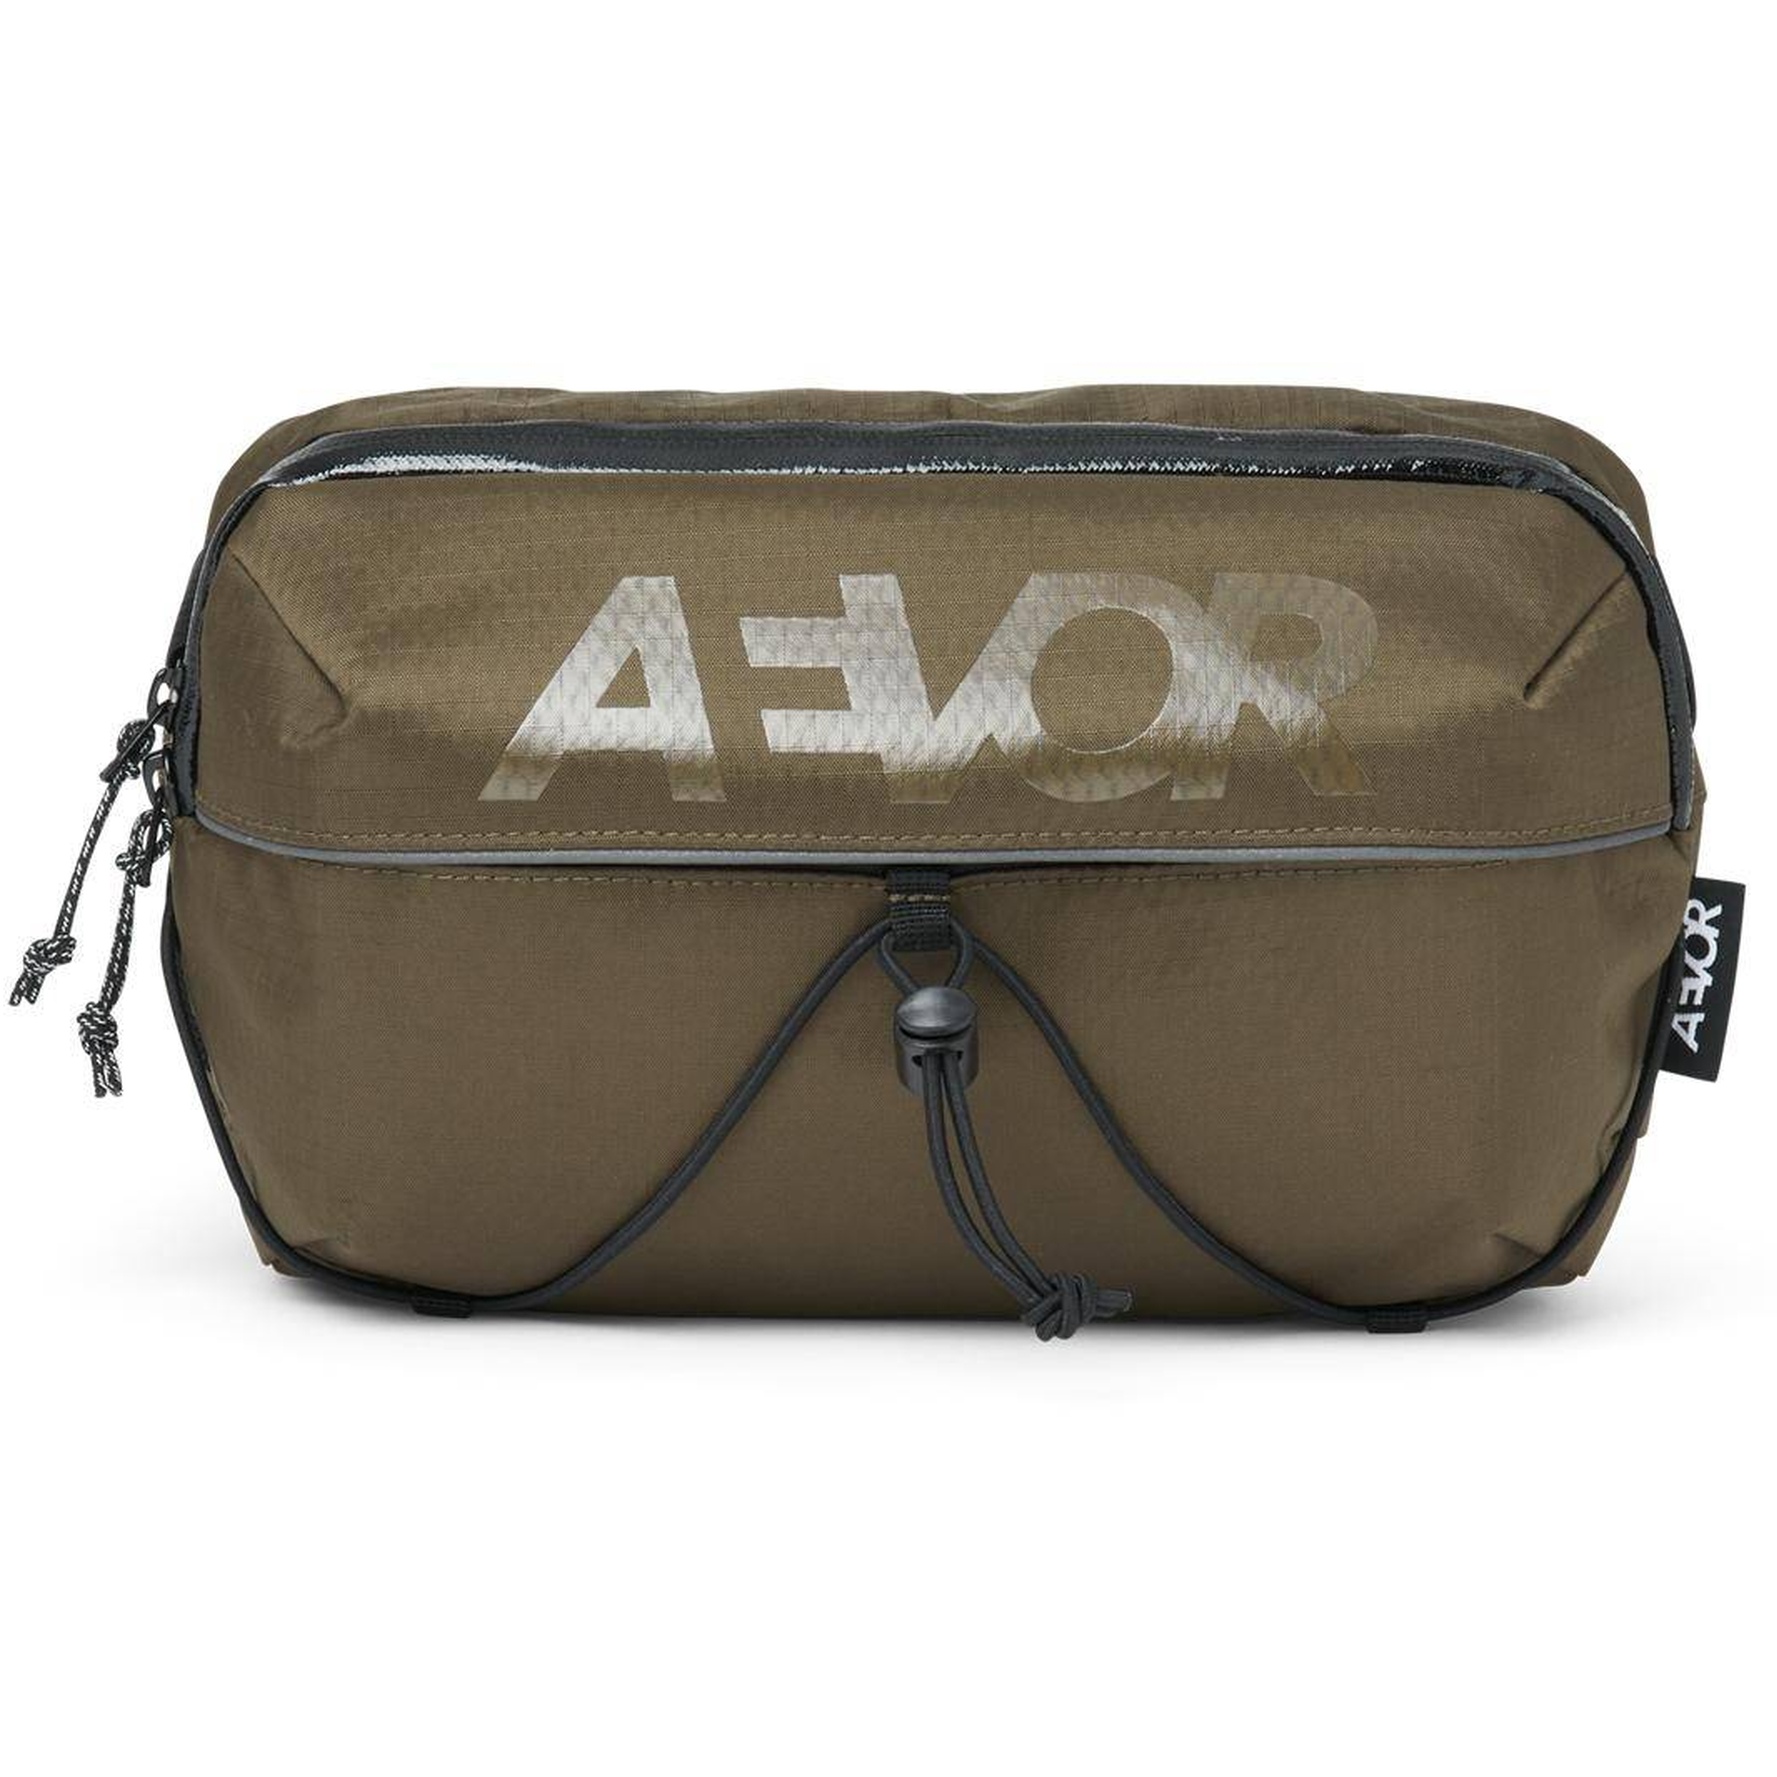 Productfoto van AEVOR Bar Bag Heptas / Stuurtas - Proof Olive Gold